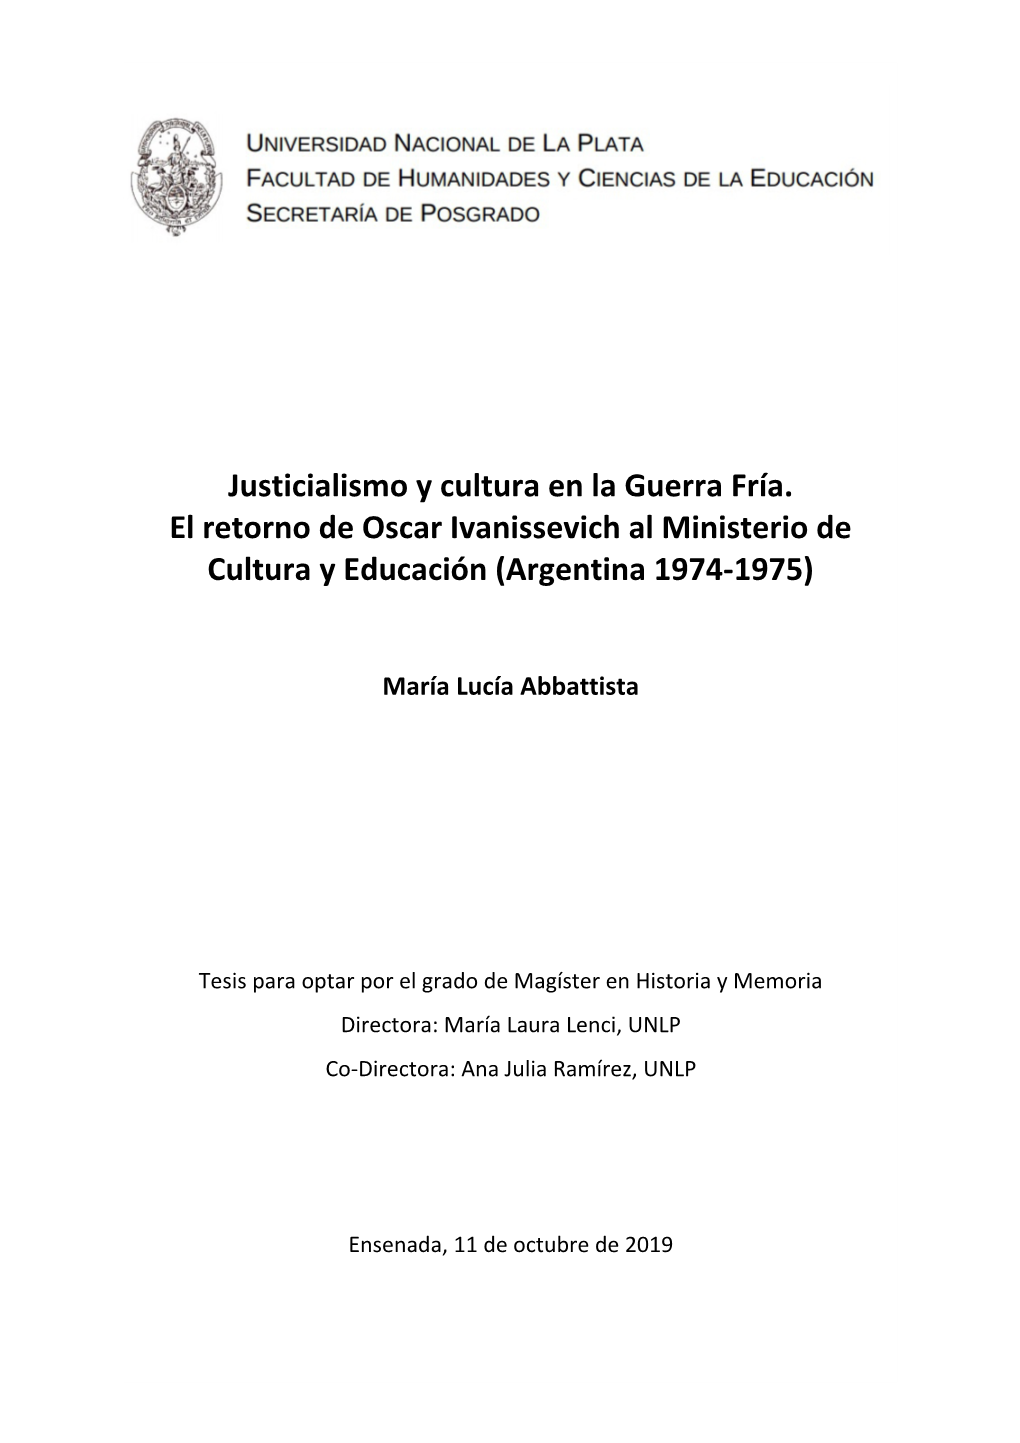 Justicialismo Y Cultura En La Guerra Fría. El Retorno De Oscar Ivanissevich Al Ministerio De Cultura Y Educación (Argentina 1974-1975)